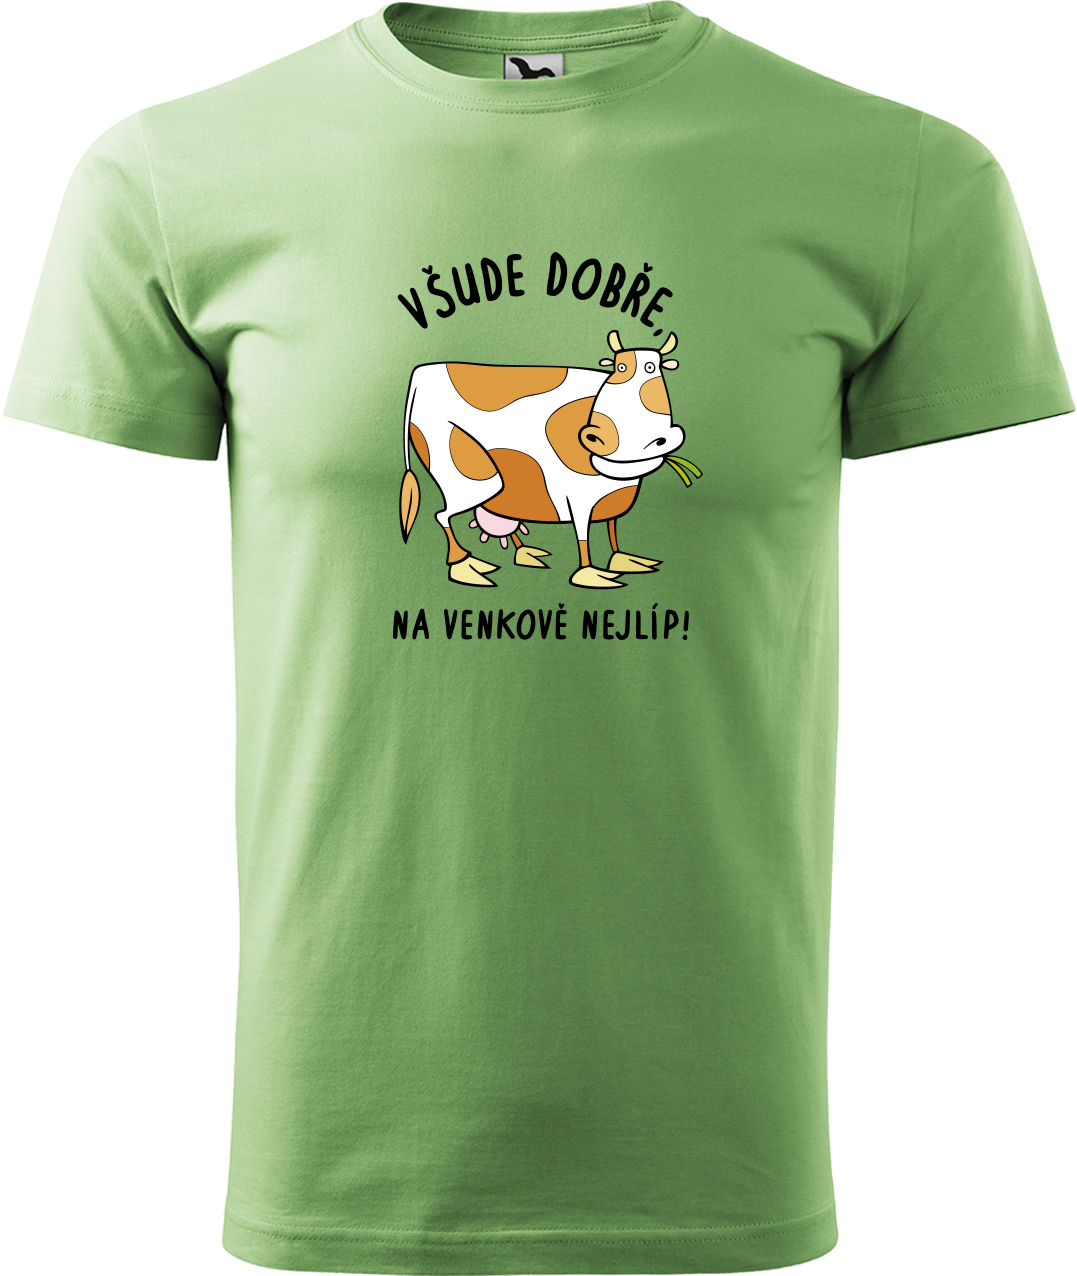 Pánské tričko s krávou - Všude dobře, na venkově nejlíp! Velikost: 2XL, Barva: Trávově zelená (39), Střih: pánský